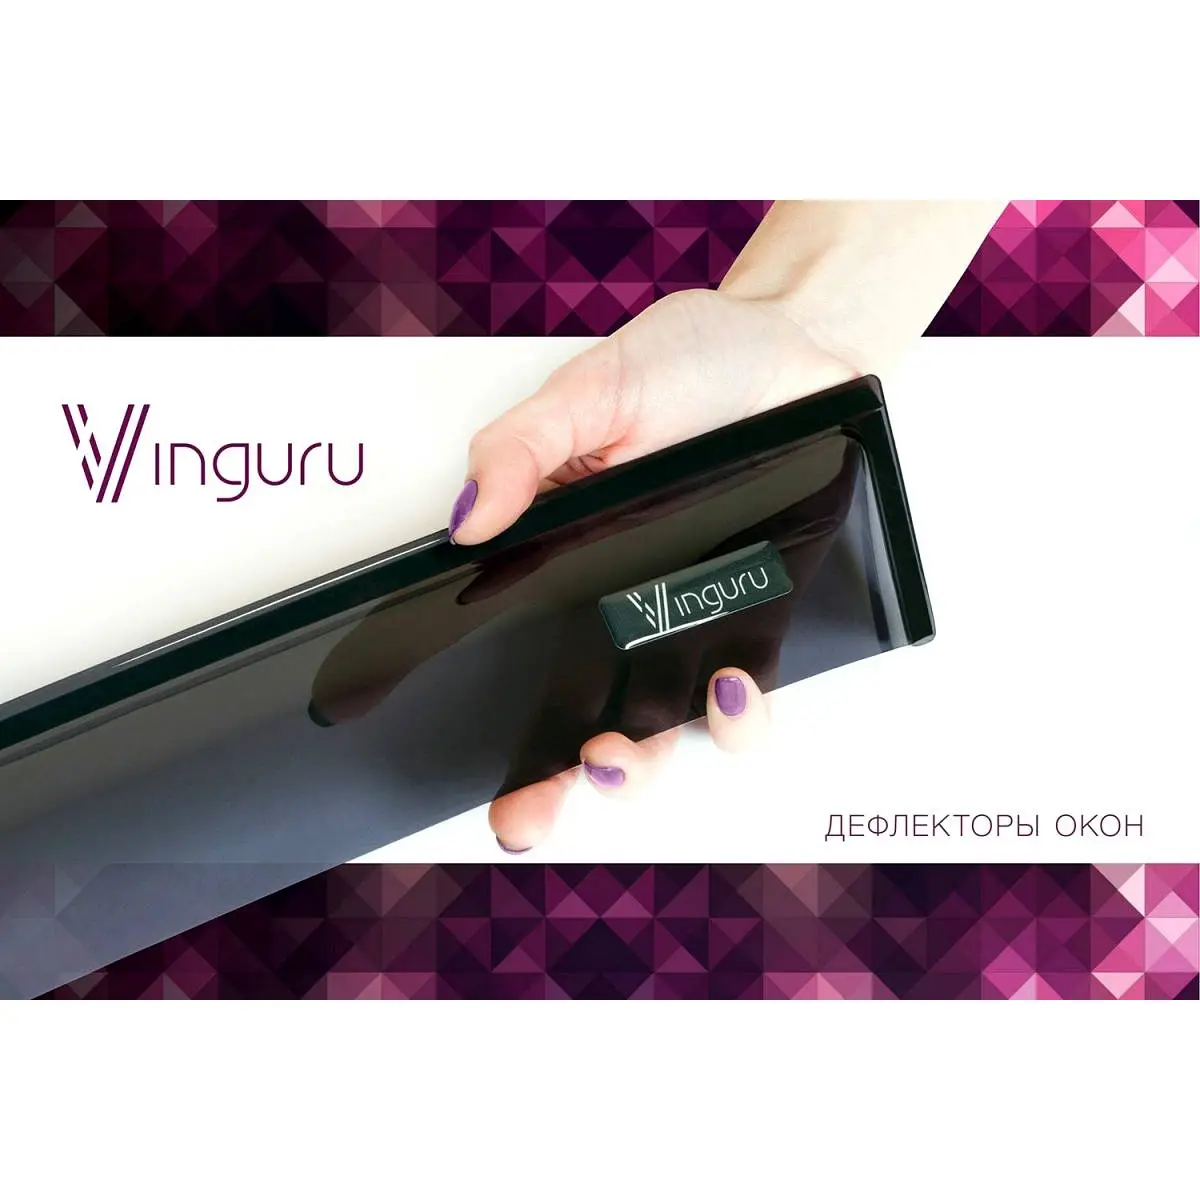 Дефлекторы окон накладные, комплект, акрил Vinguru USNVX P Q4J05A afv39901 1437114518 изображение 3